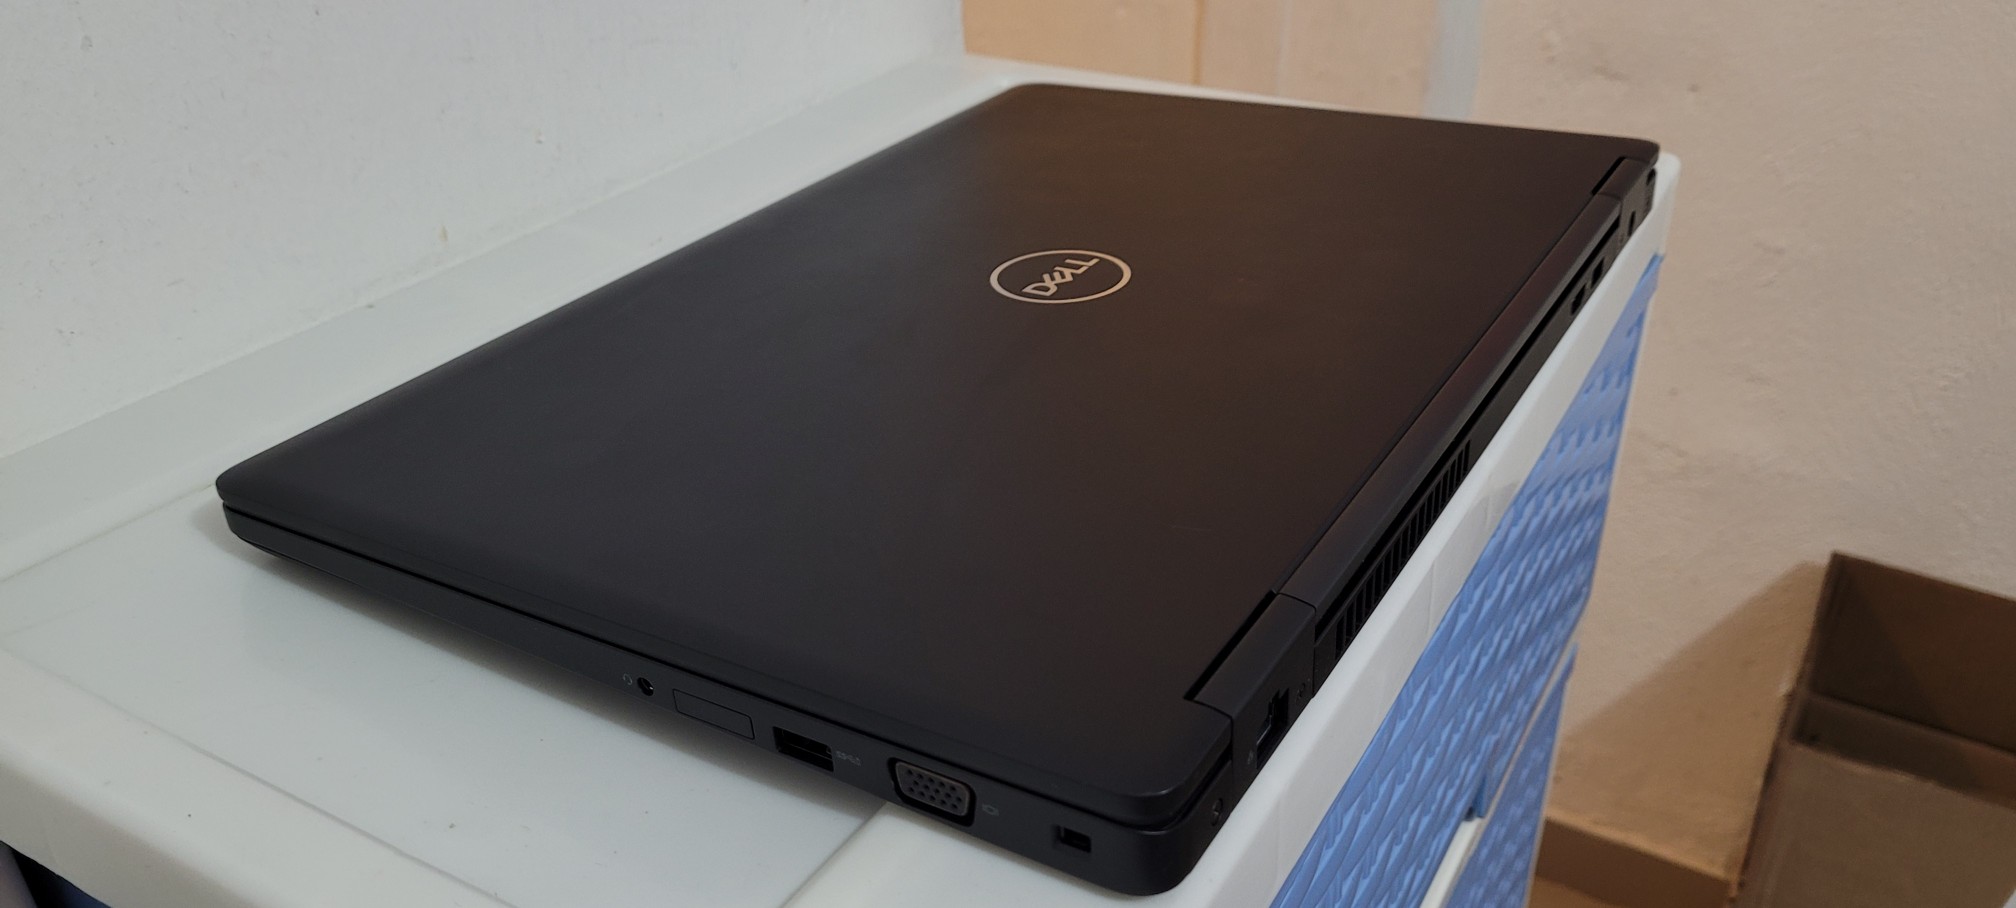 computadoras y laptops - Dell 5590 17 Pulg Core i5 8va Gen Ram 16gb Disco 512gb SSD Solido Video 8gb 2